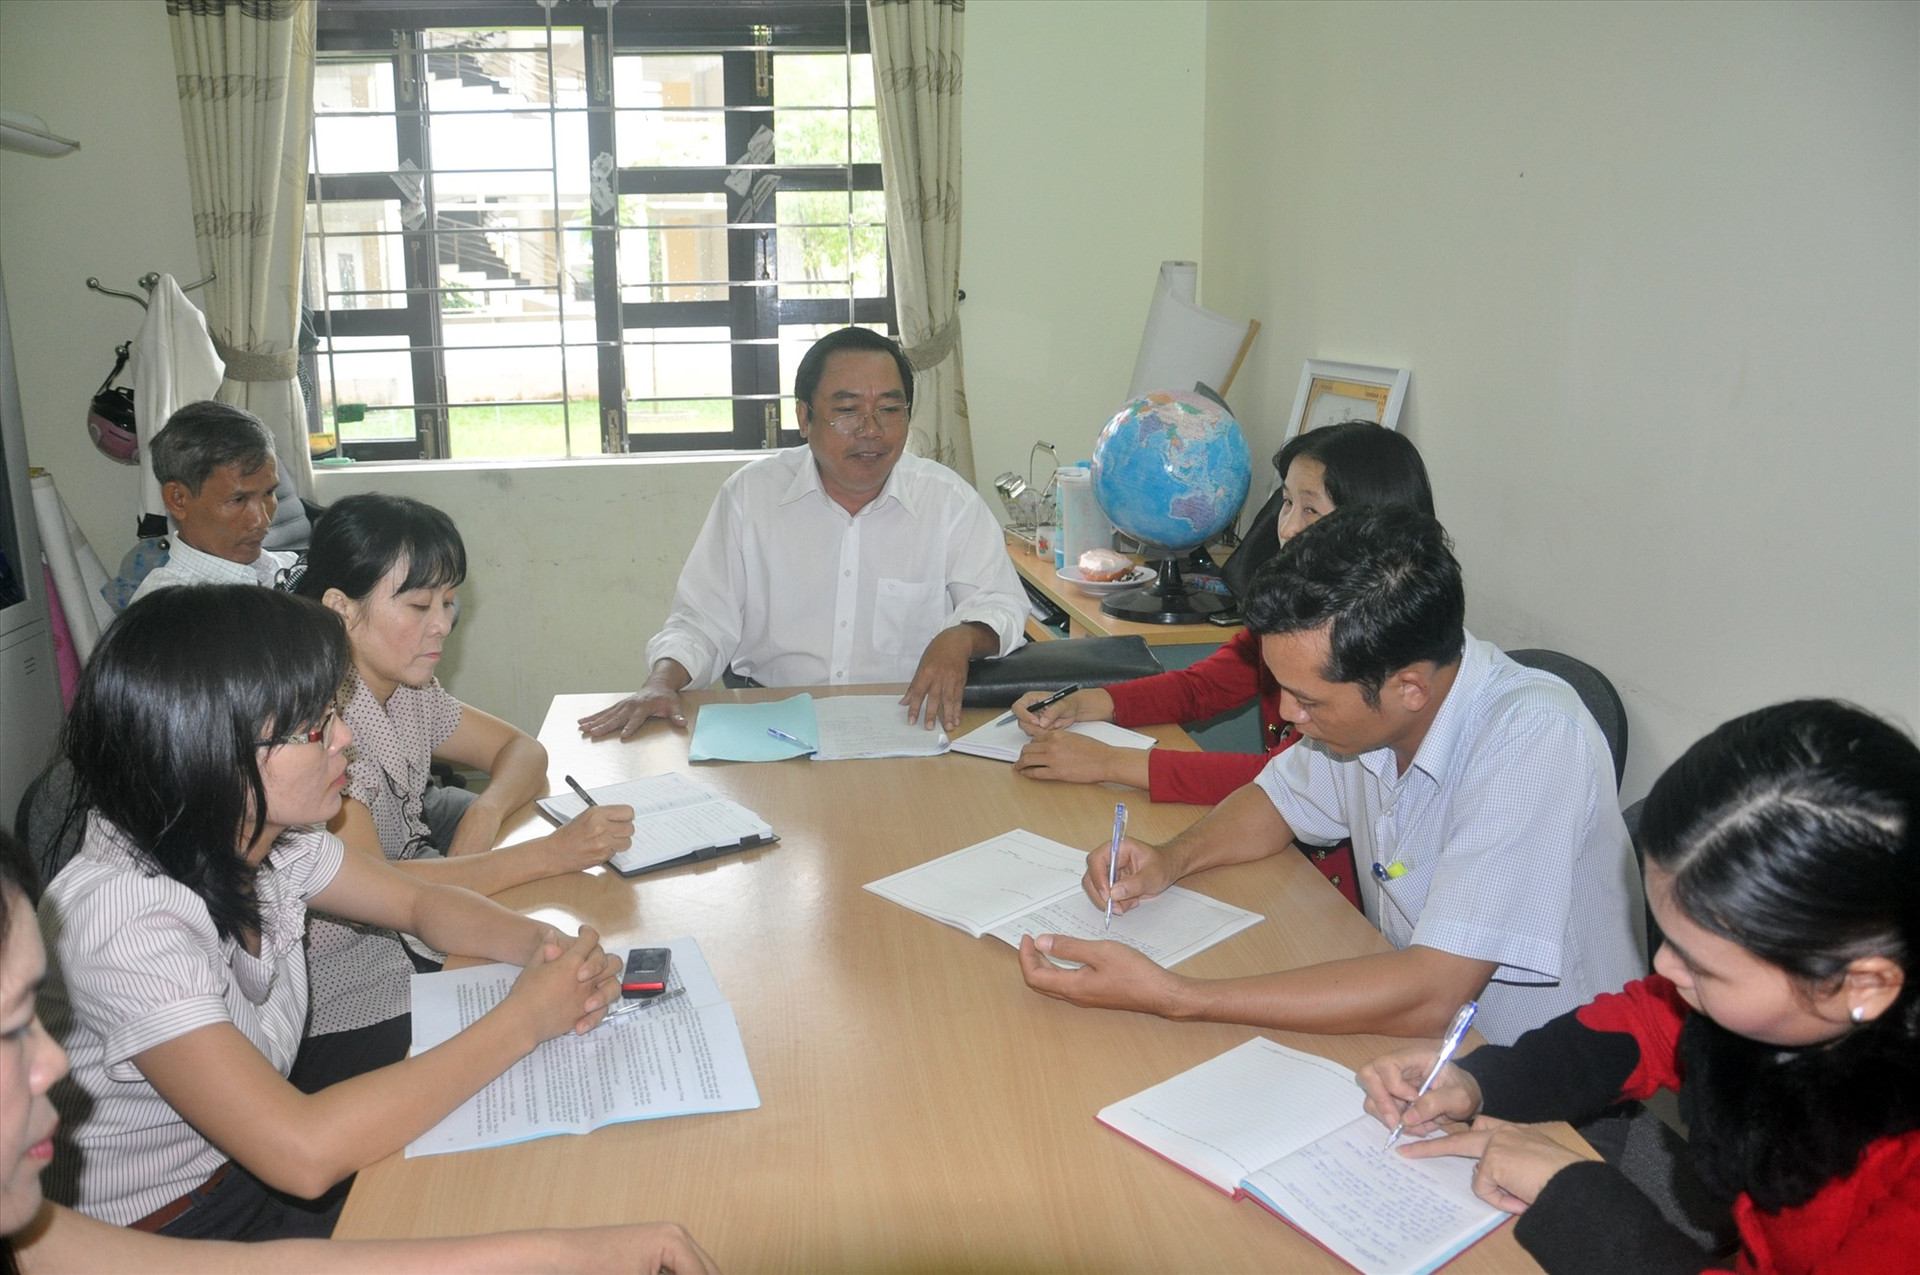 Trường THPT chuyên Nguyễn Bỉnh Khiêm sở hữu 50% đội ngũ có trình độ chuyên môn thạc sĩ, tiến sĩ và đạt nhiều thành tích trong dạy học. Ảnh: X.P